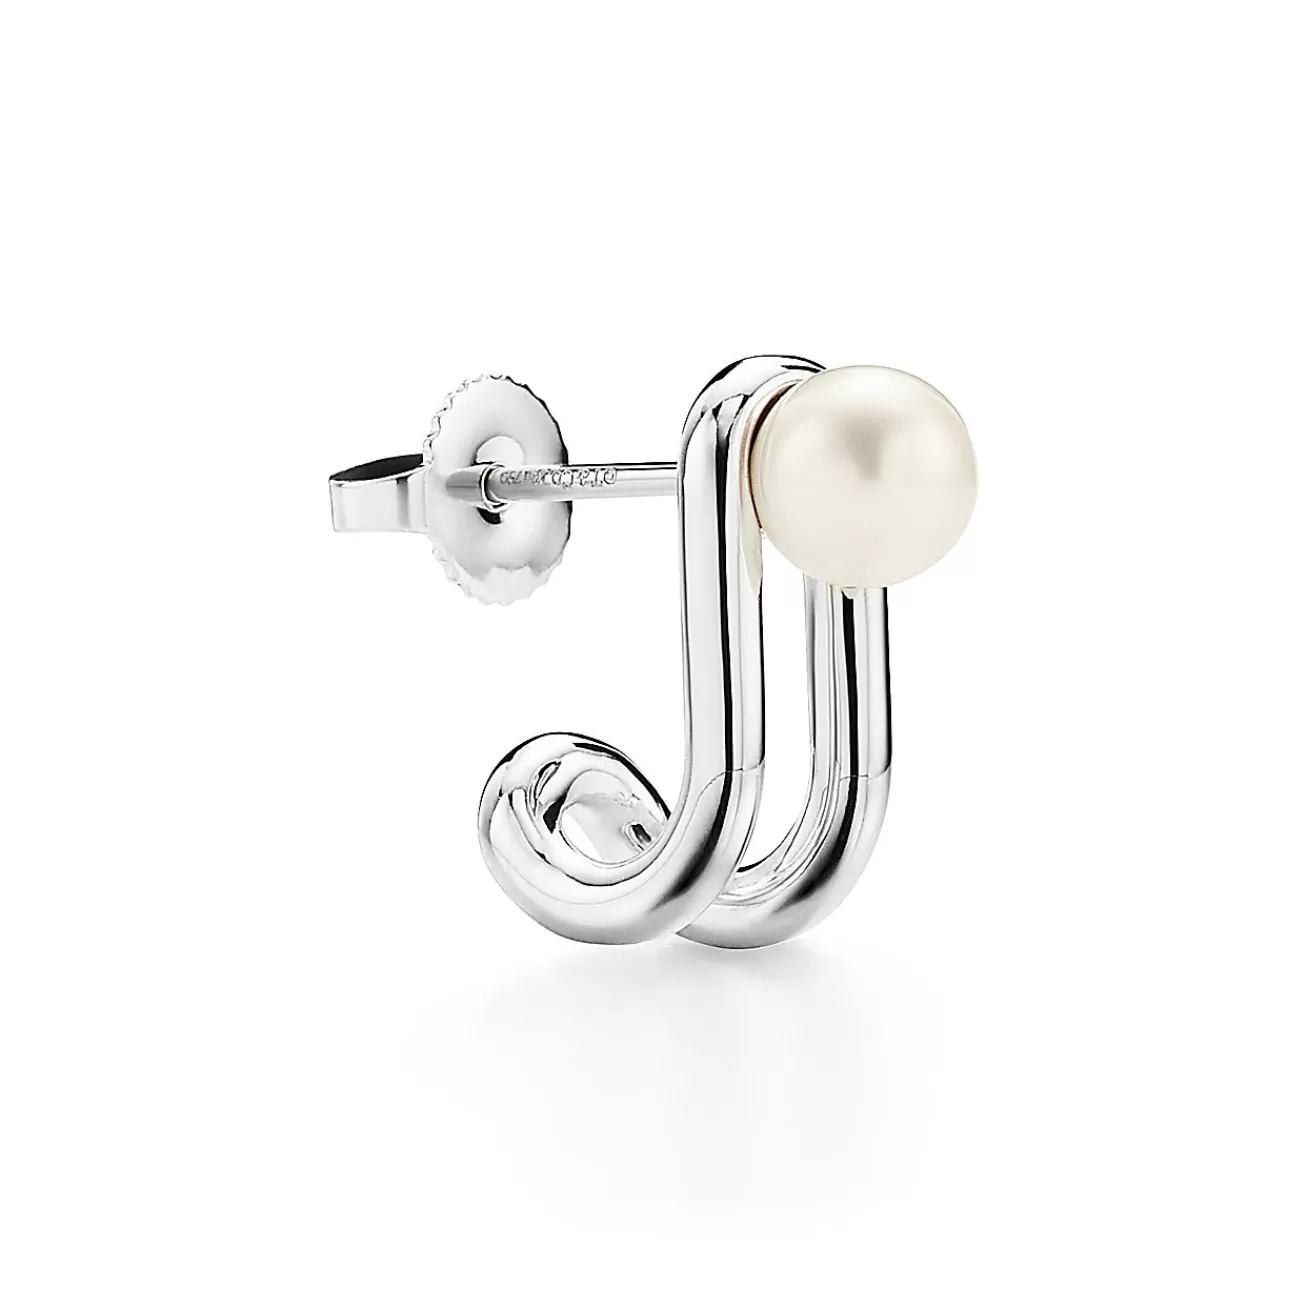 Tiffany & Co. Tiffany HardWear double pearl hinged earrings in sterling silver. | ^ Earrings | Gifts for Her